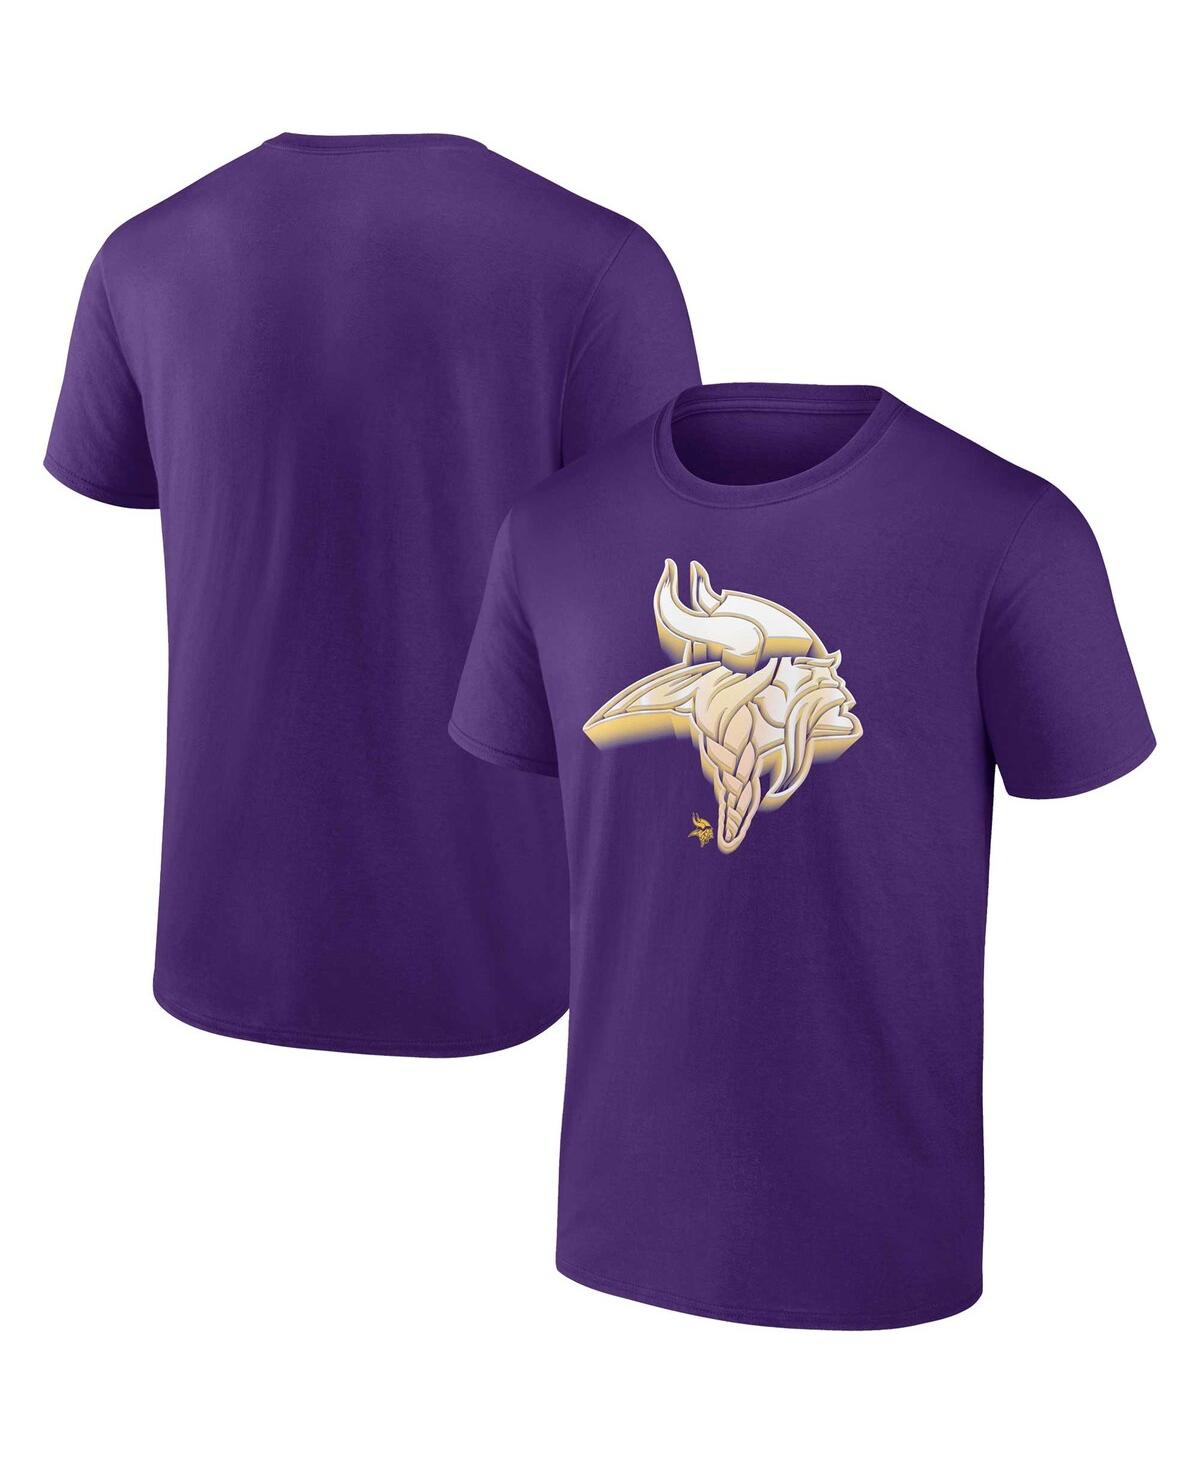 Fanatics Men's  Purple Minnesota Vikings Chrome Dimension T-shirt